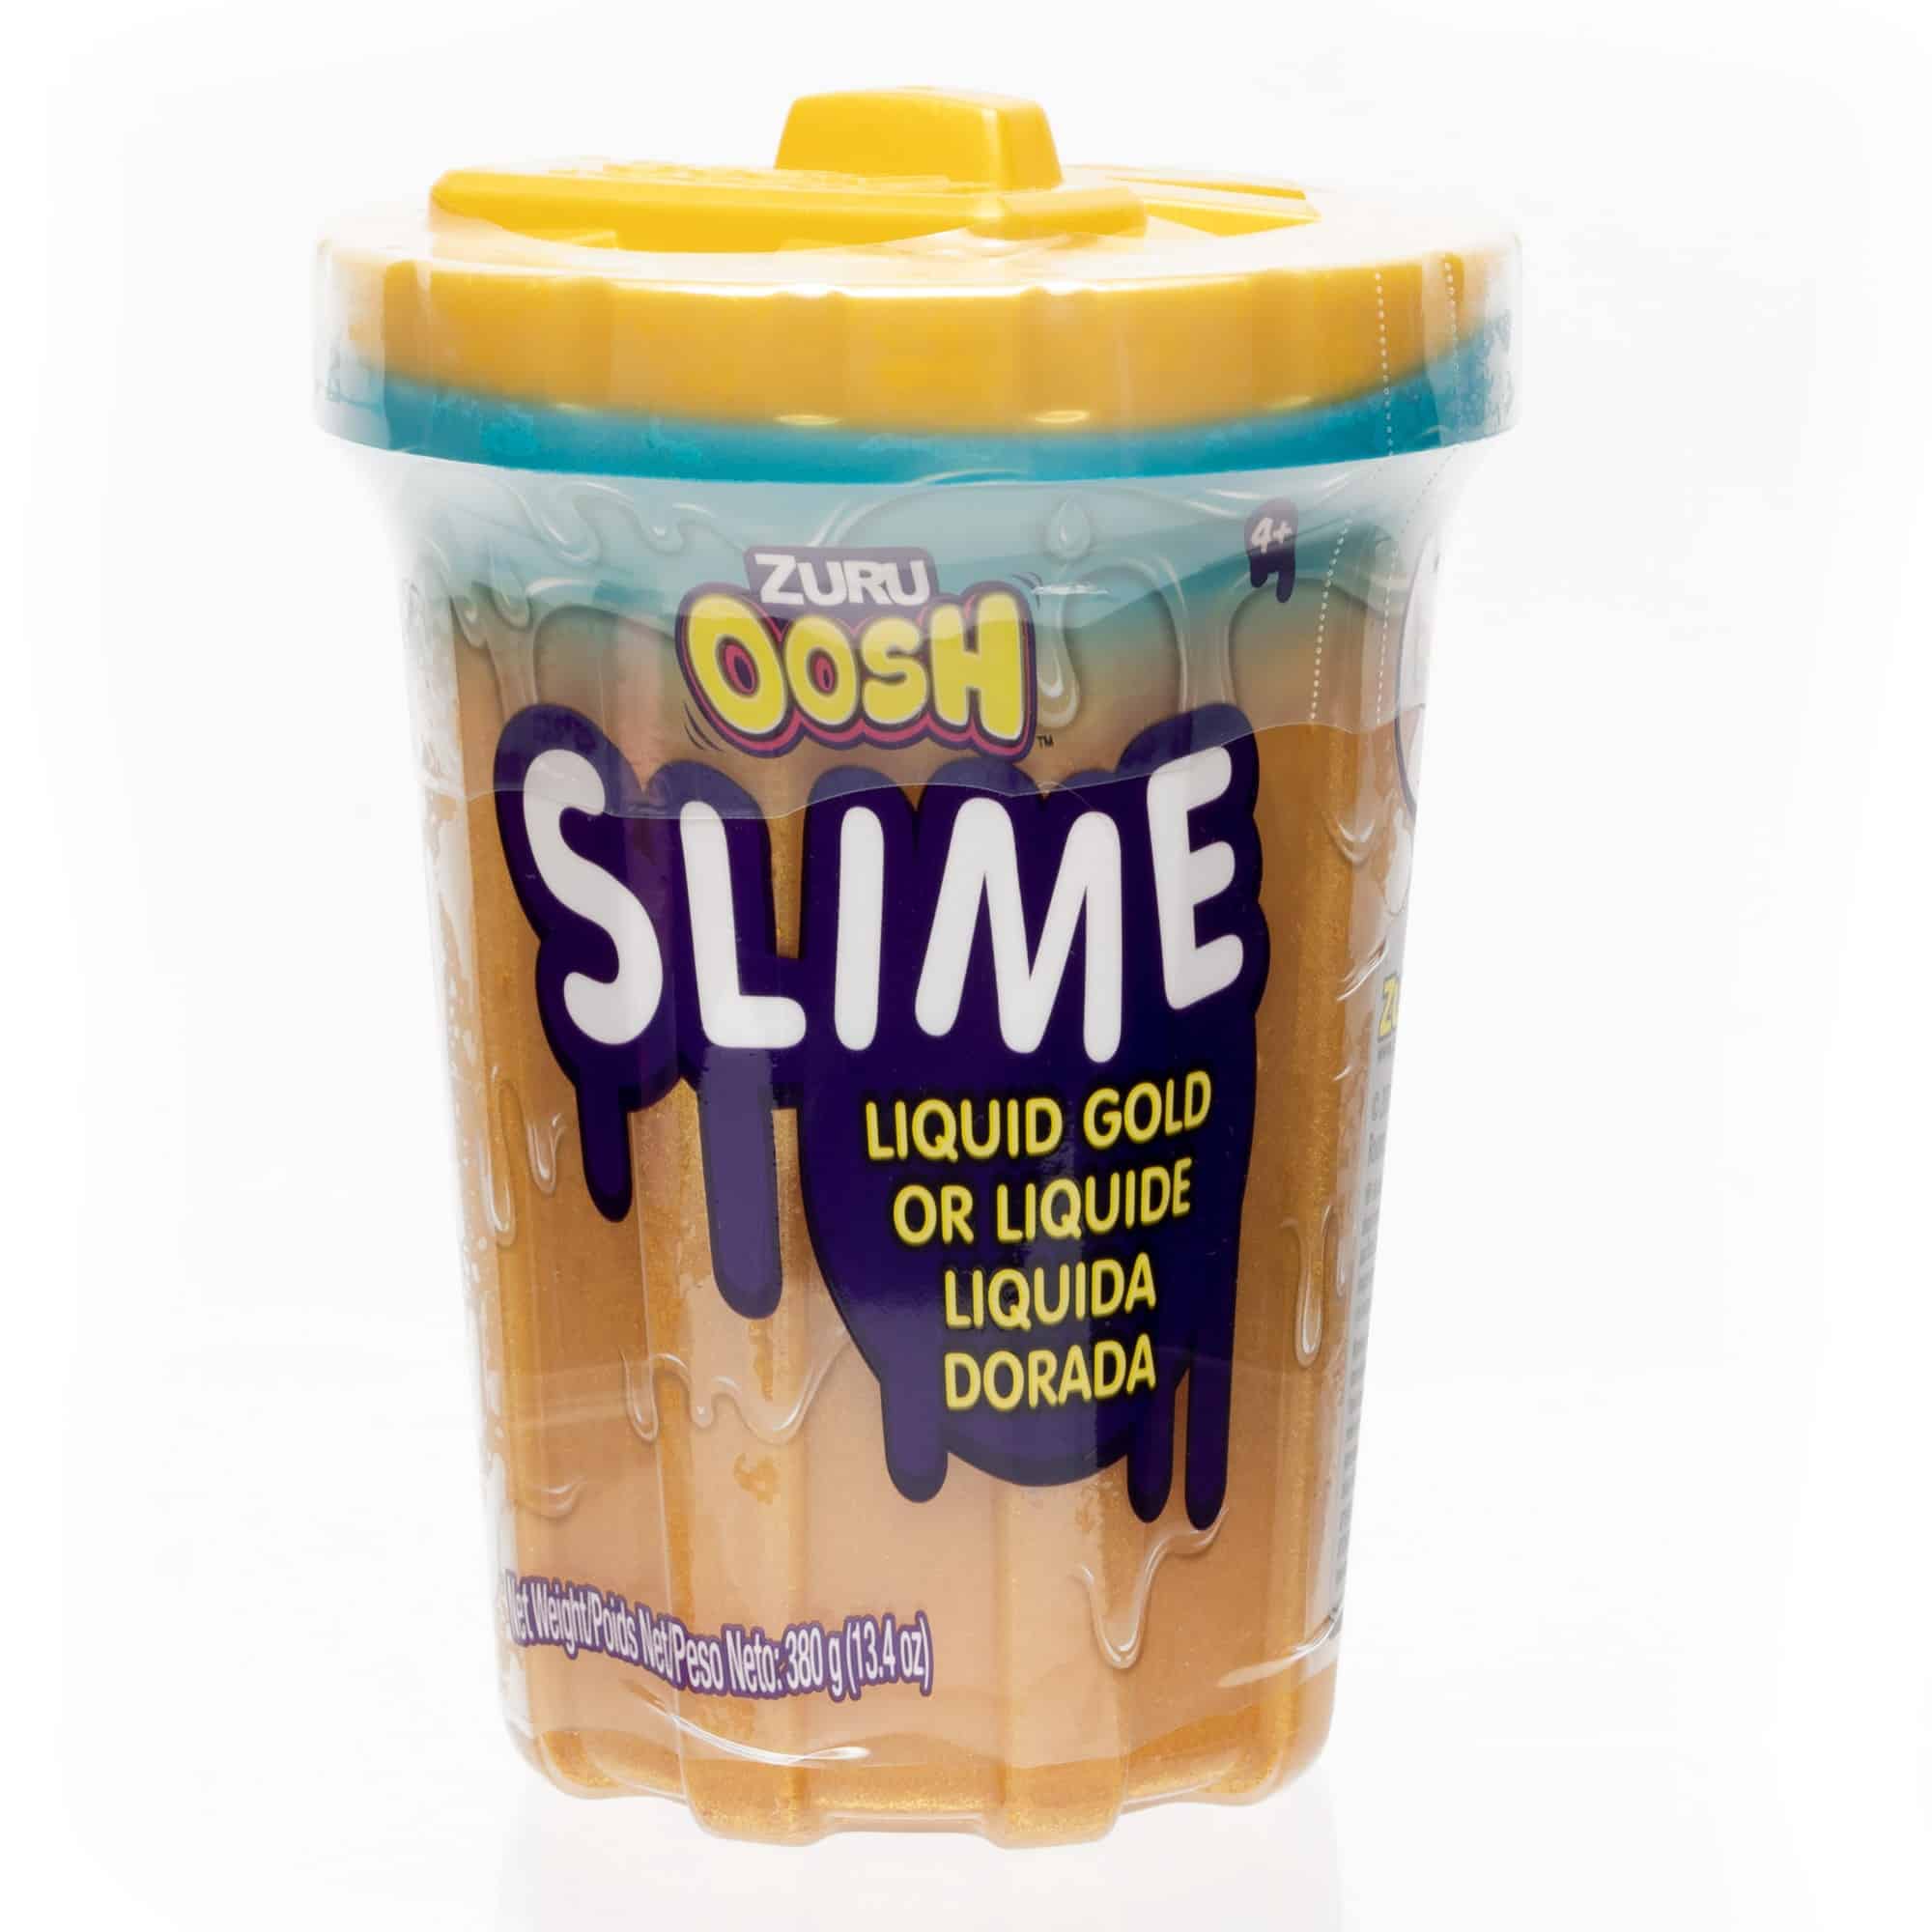 Zuru Oosh Slime - Liquid Gold